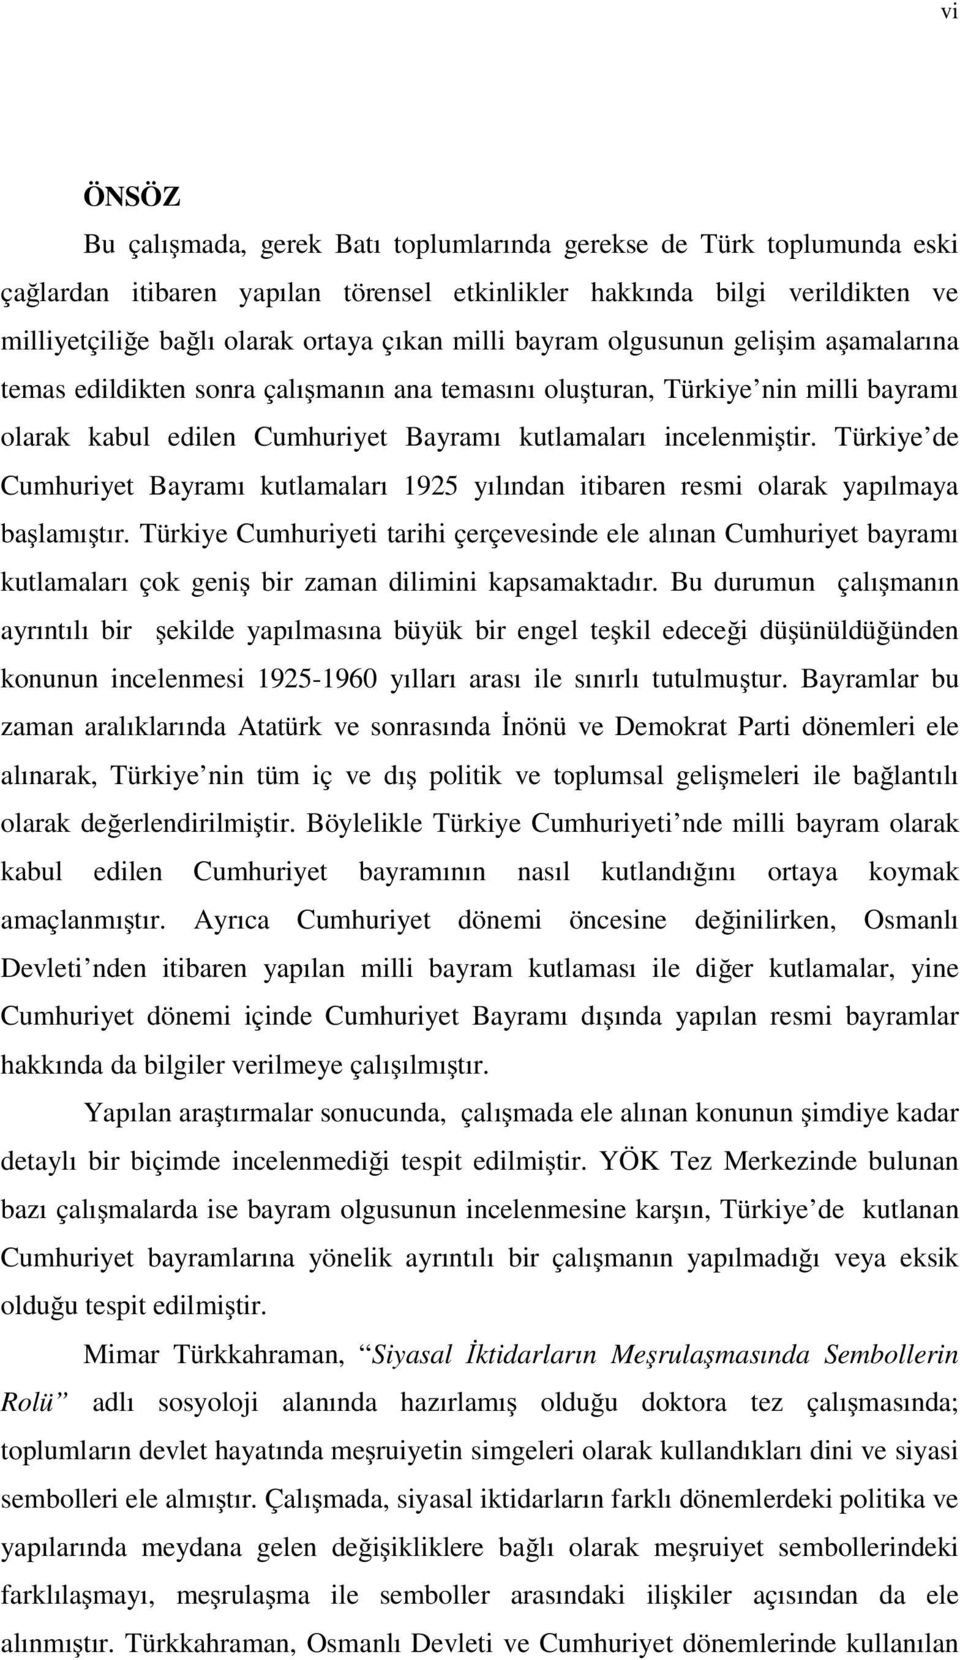 Türkiye de Cumhuriyet Bayramı kutlamaları 1925 yılından itibaren resmi olarak yapılmaya ba lamı tır.